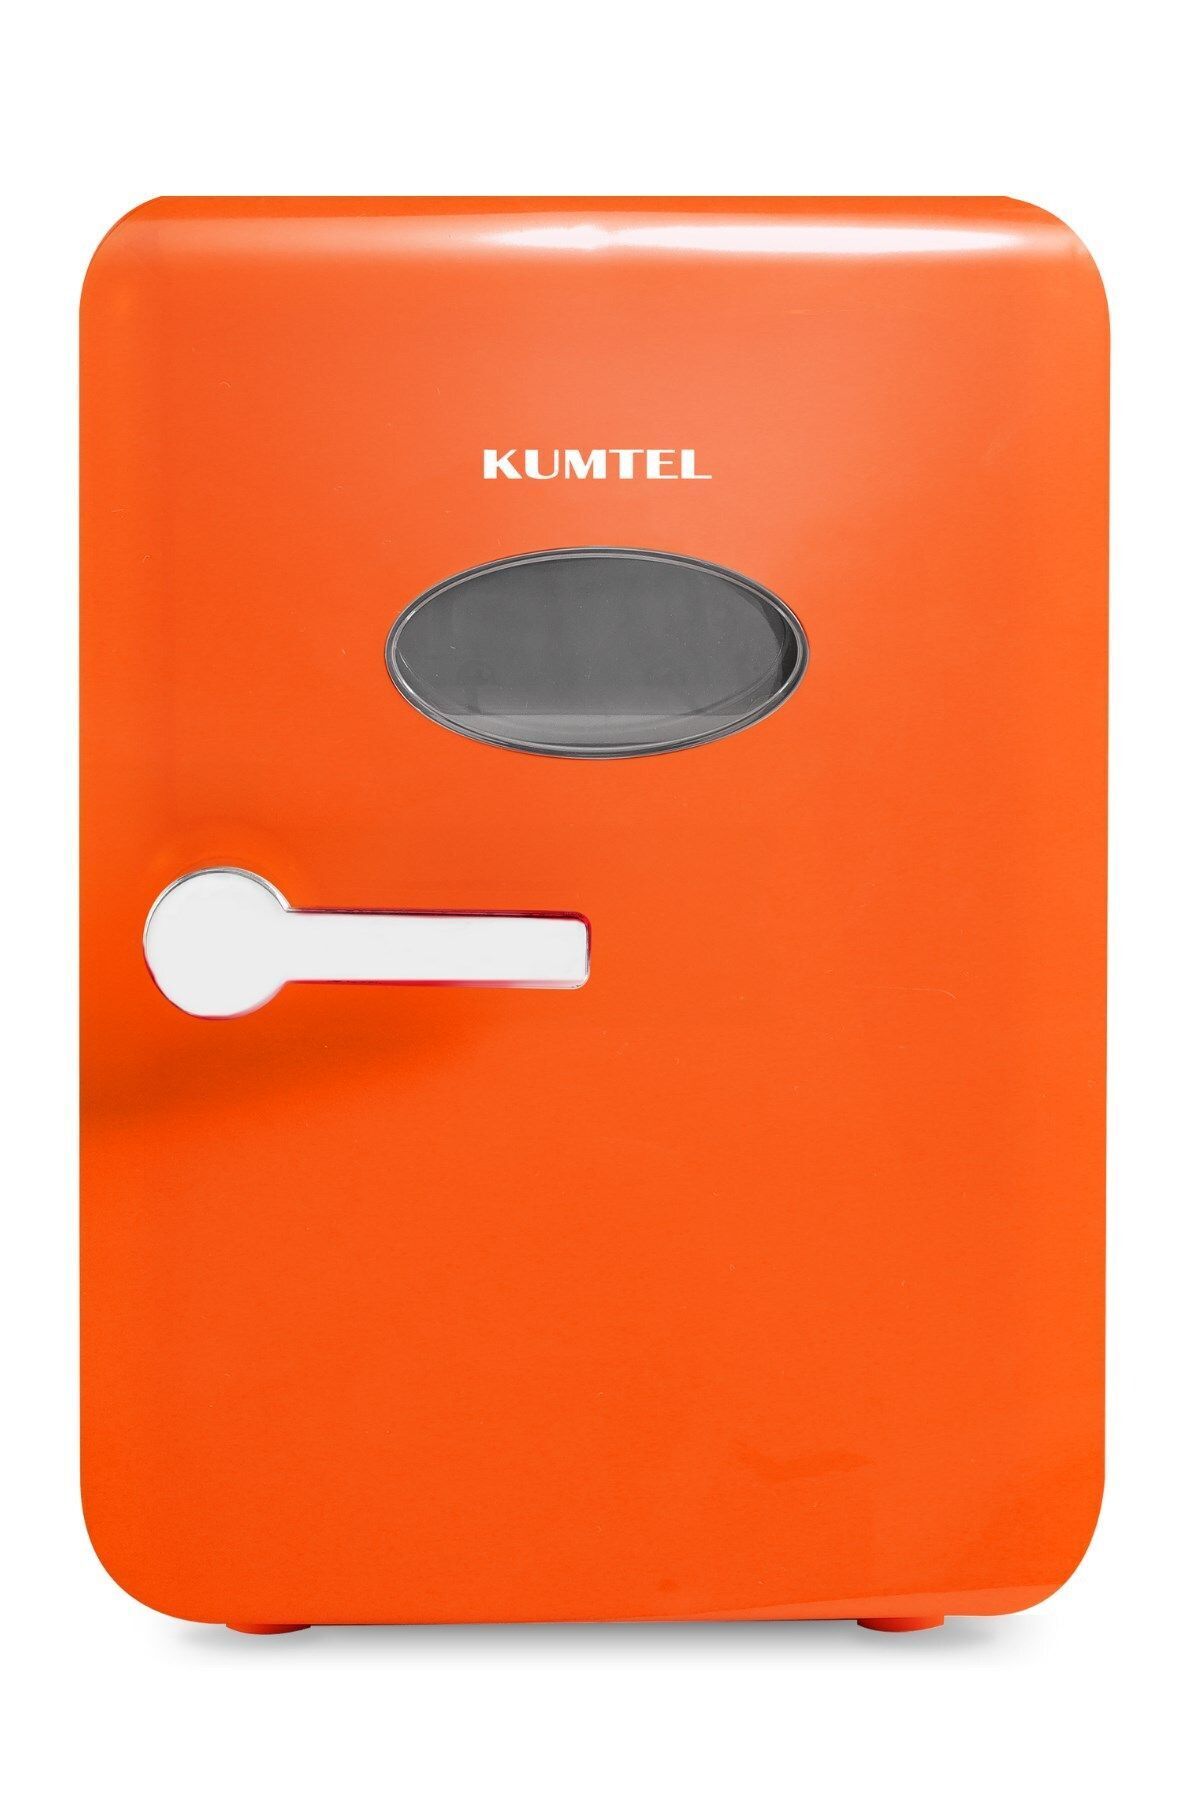 KUMTEL 4L Turuncu Mini Buzdolabı HMFR-04